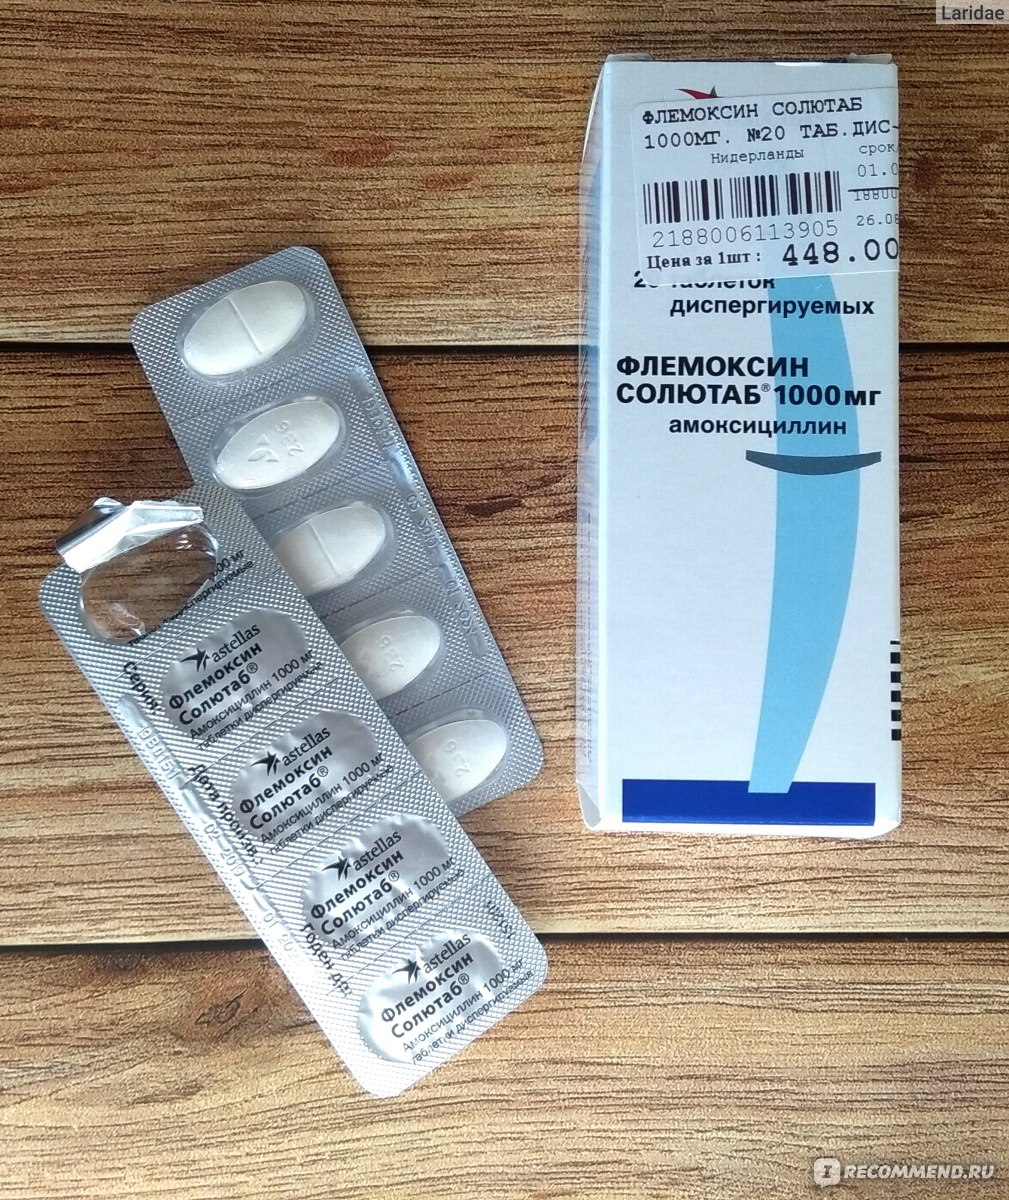 Антибиотик от горла взрослым недорогой